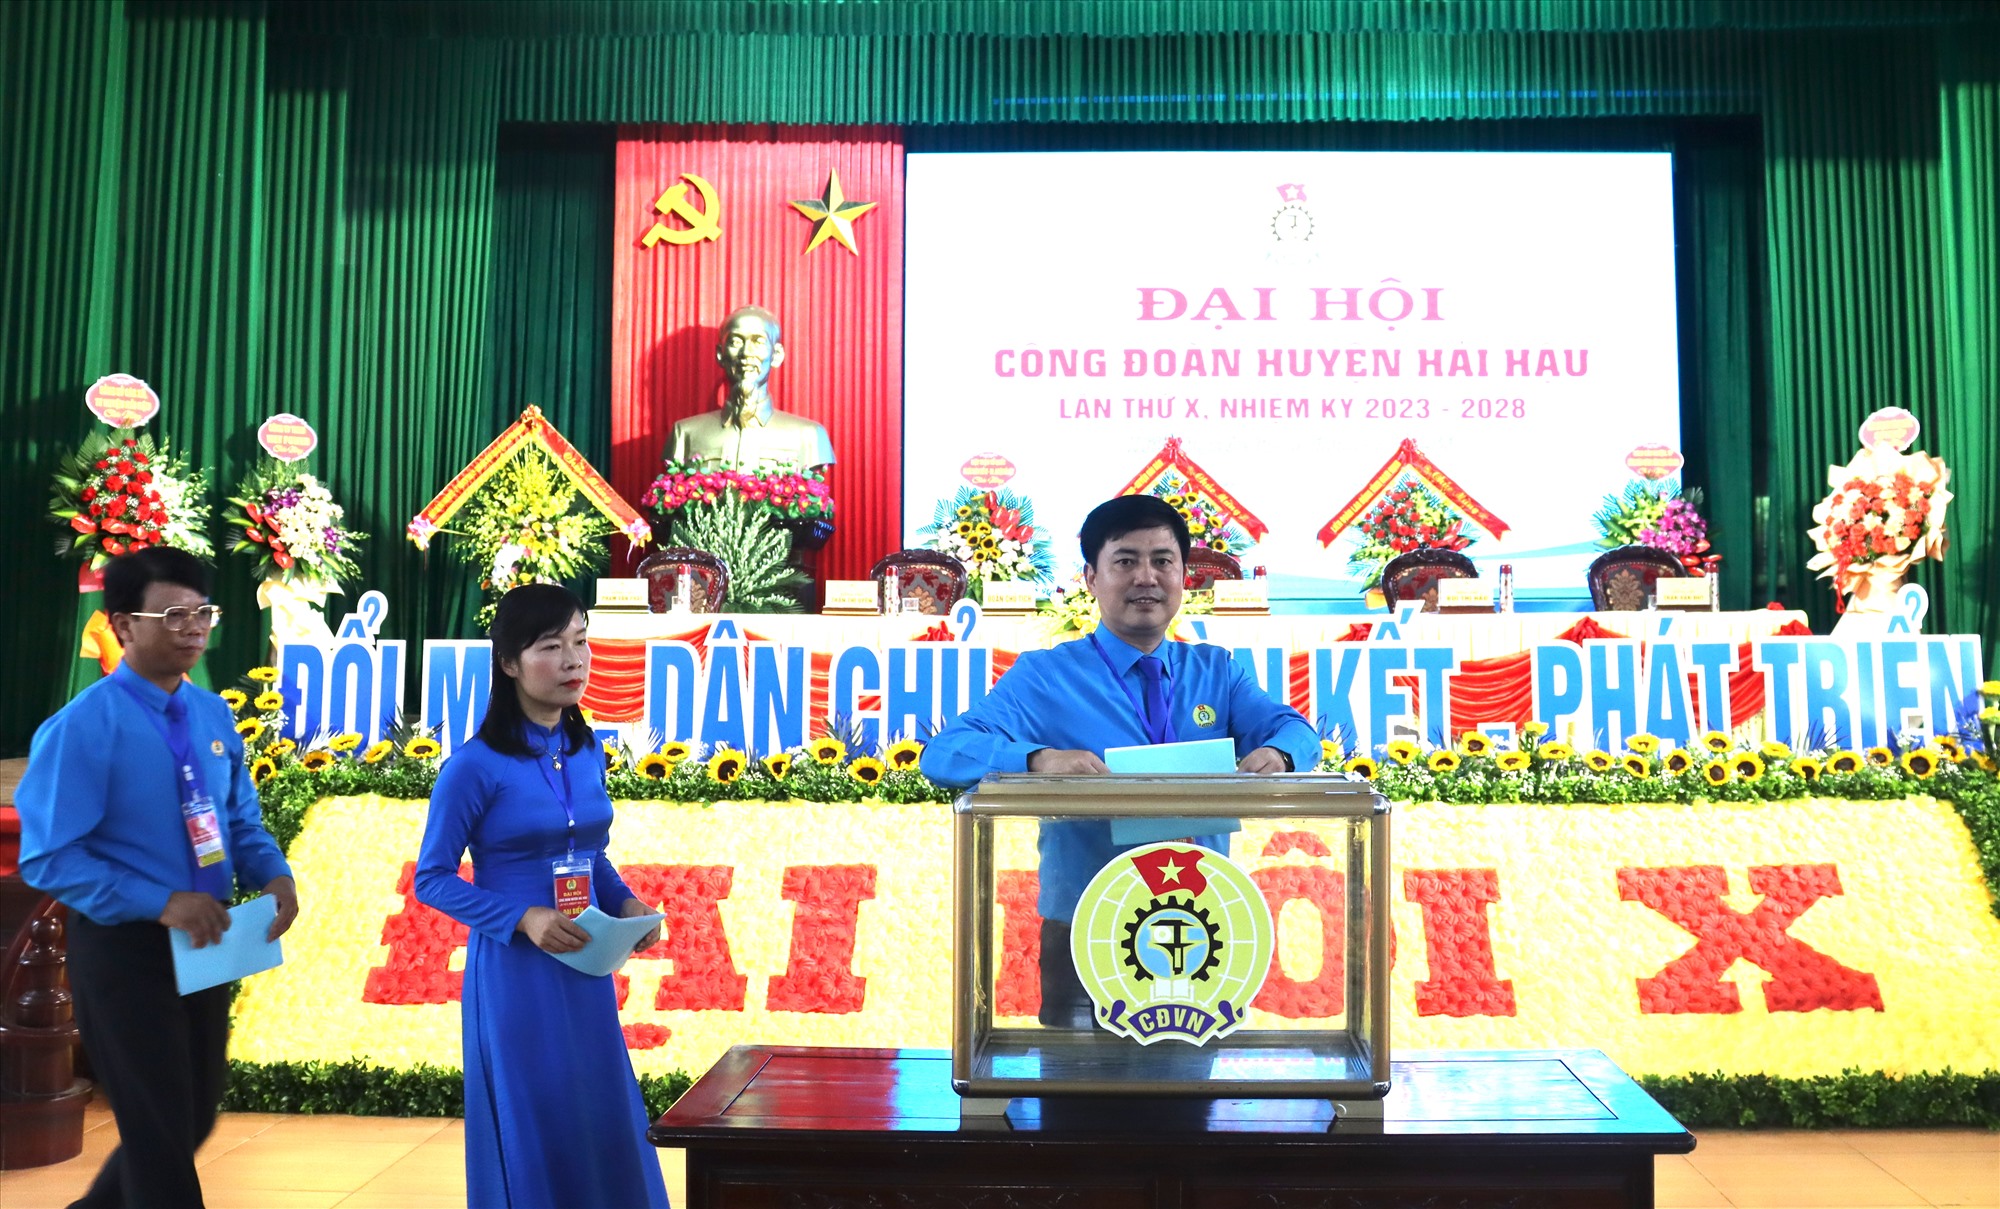 Các đại biểu bầu Ban chấp hành Công đoàn huyện Hải Hậu nhiệm kỳ 2023-2028. Ảnh: Công đoàn Nam Định